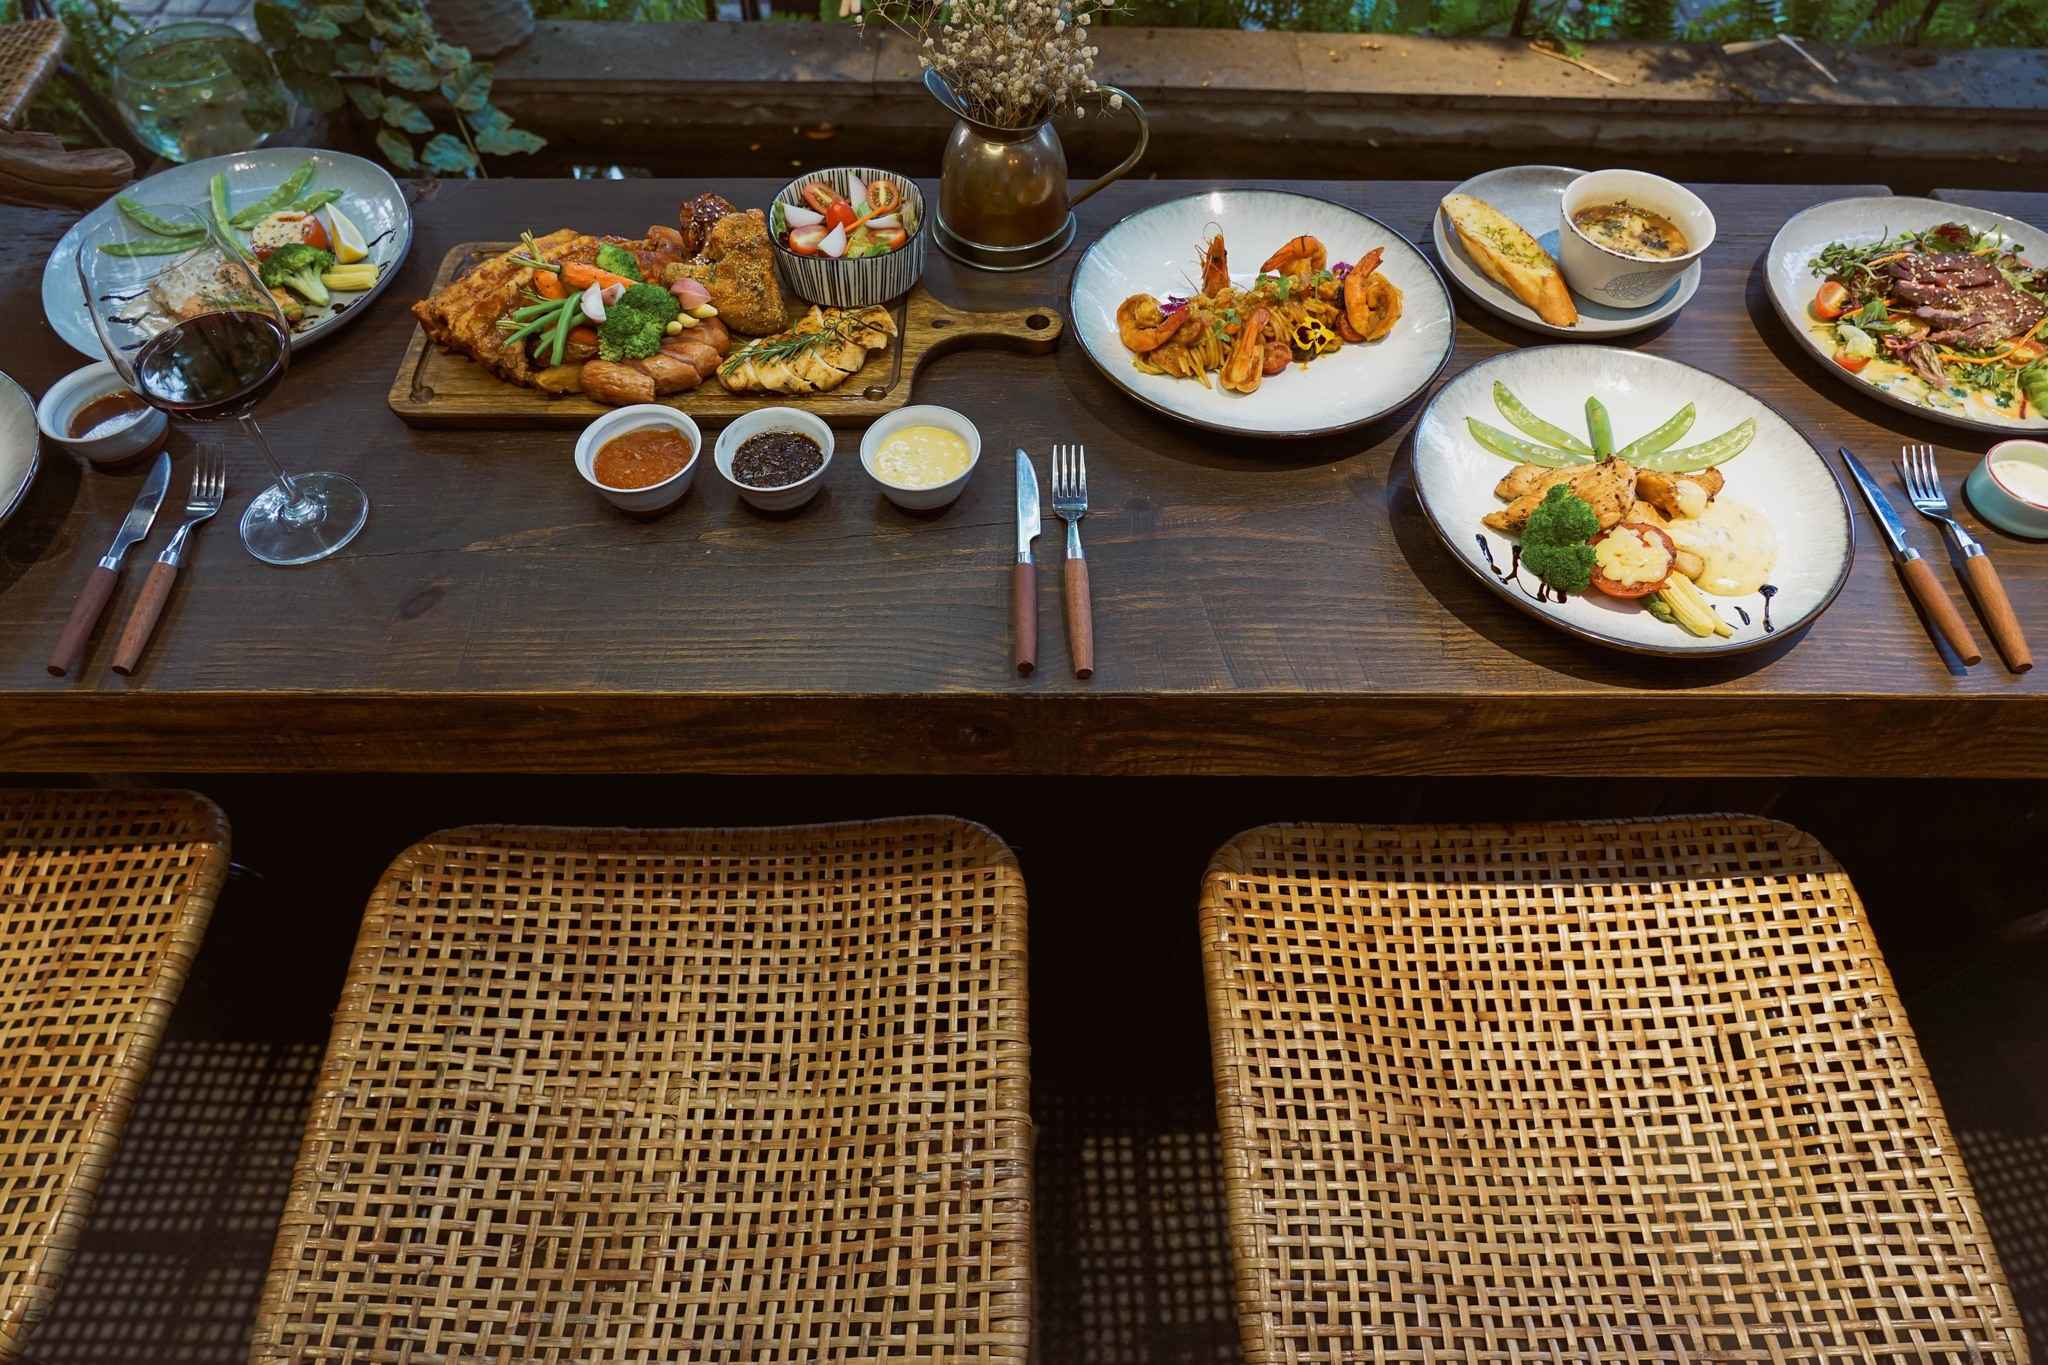 Nhà hàng sân vườn tạo điều kiện để thưởng thức món ăn ngon trong không khí thiên nhiên mát mẻ